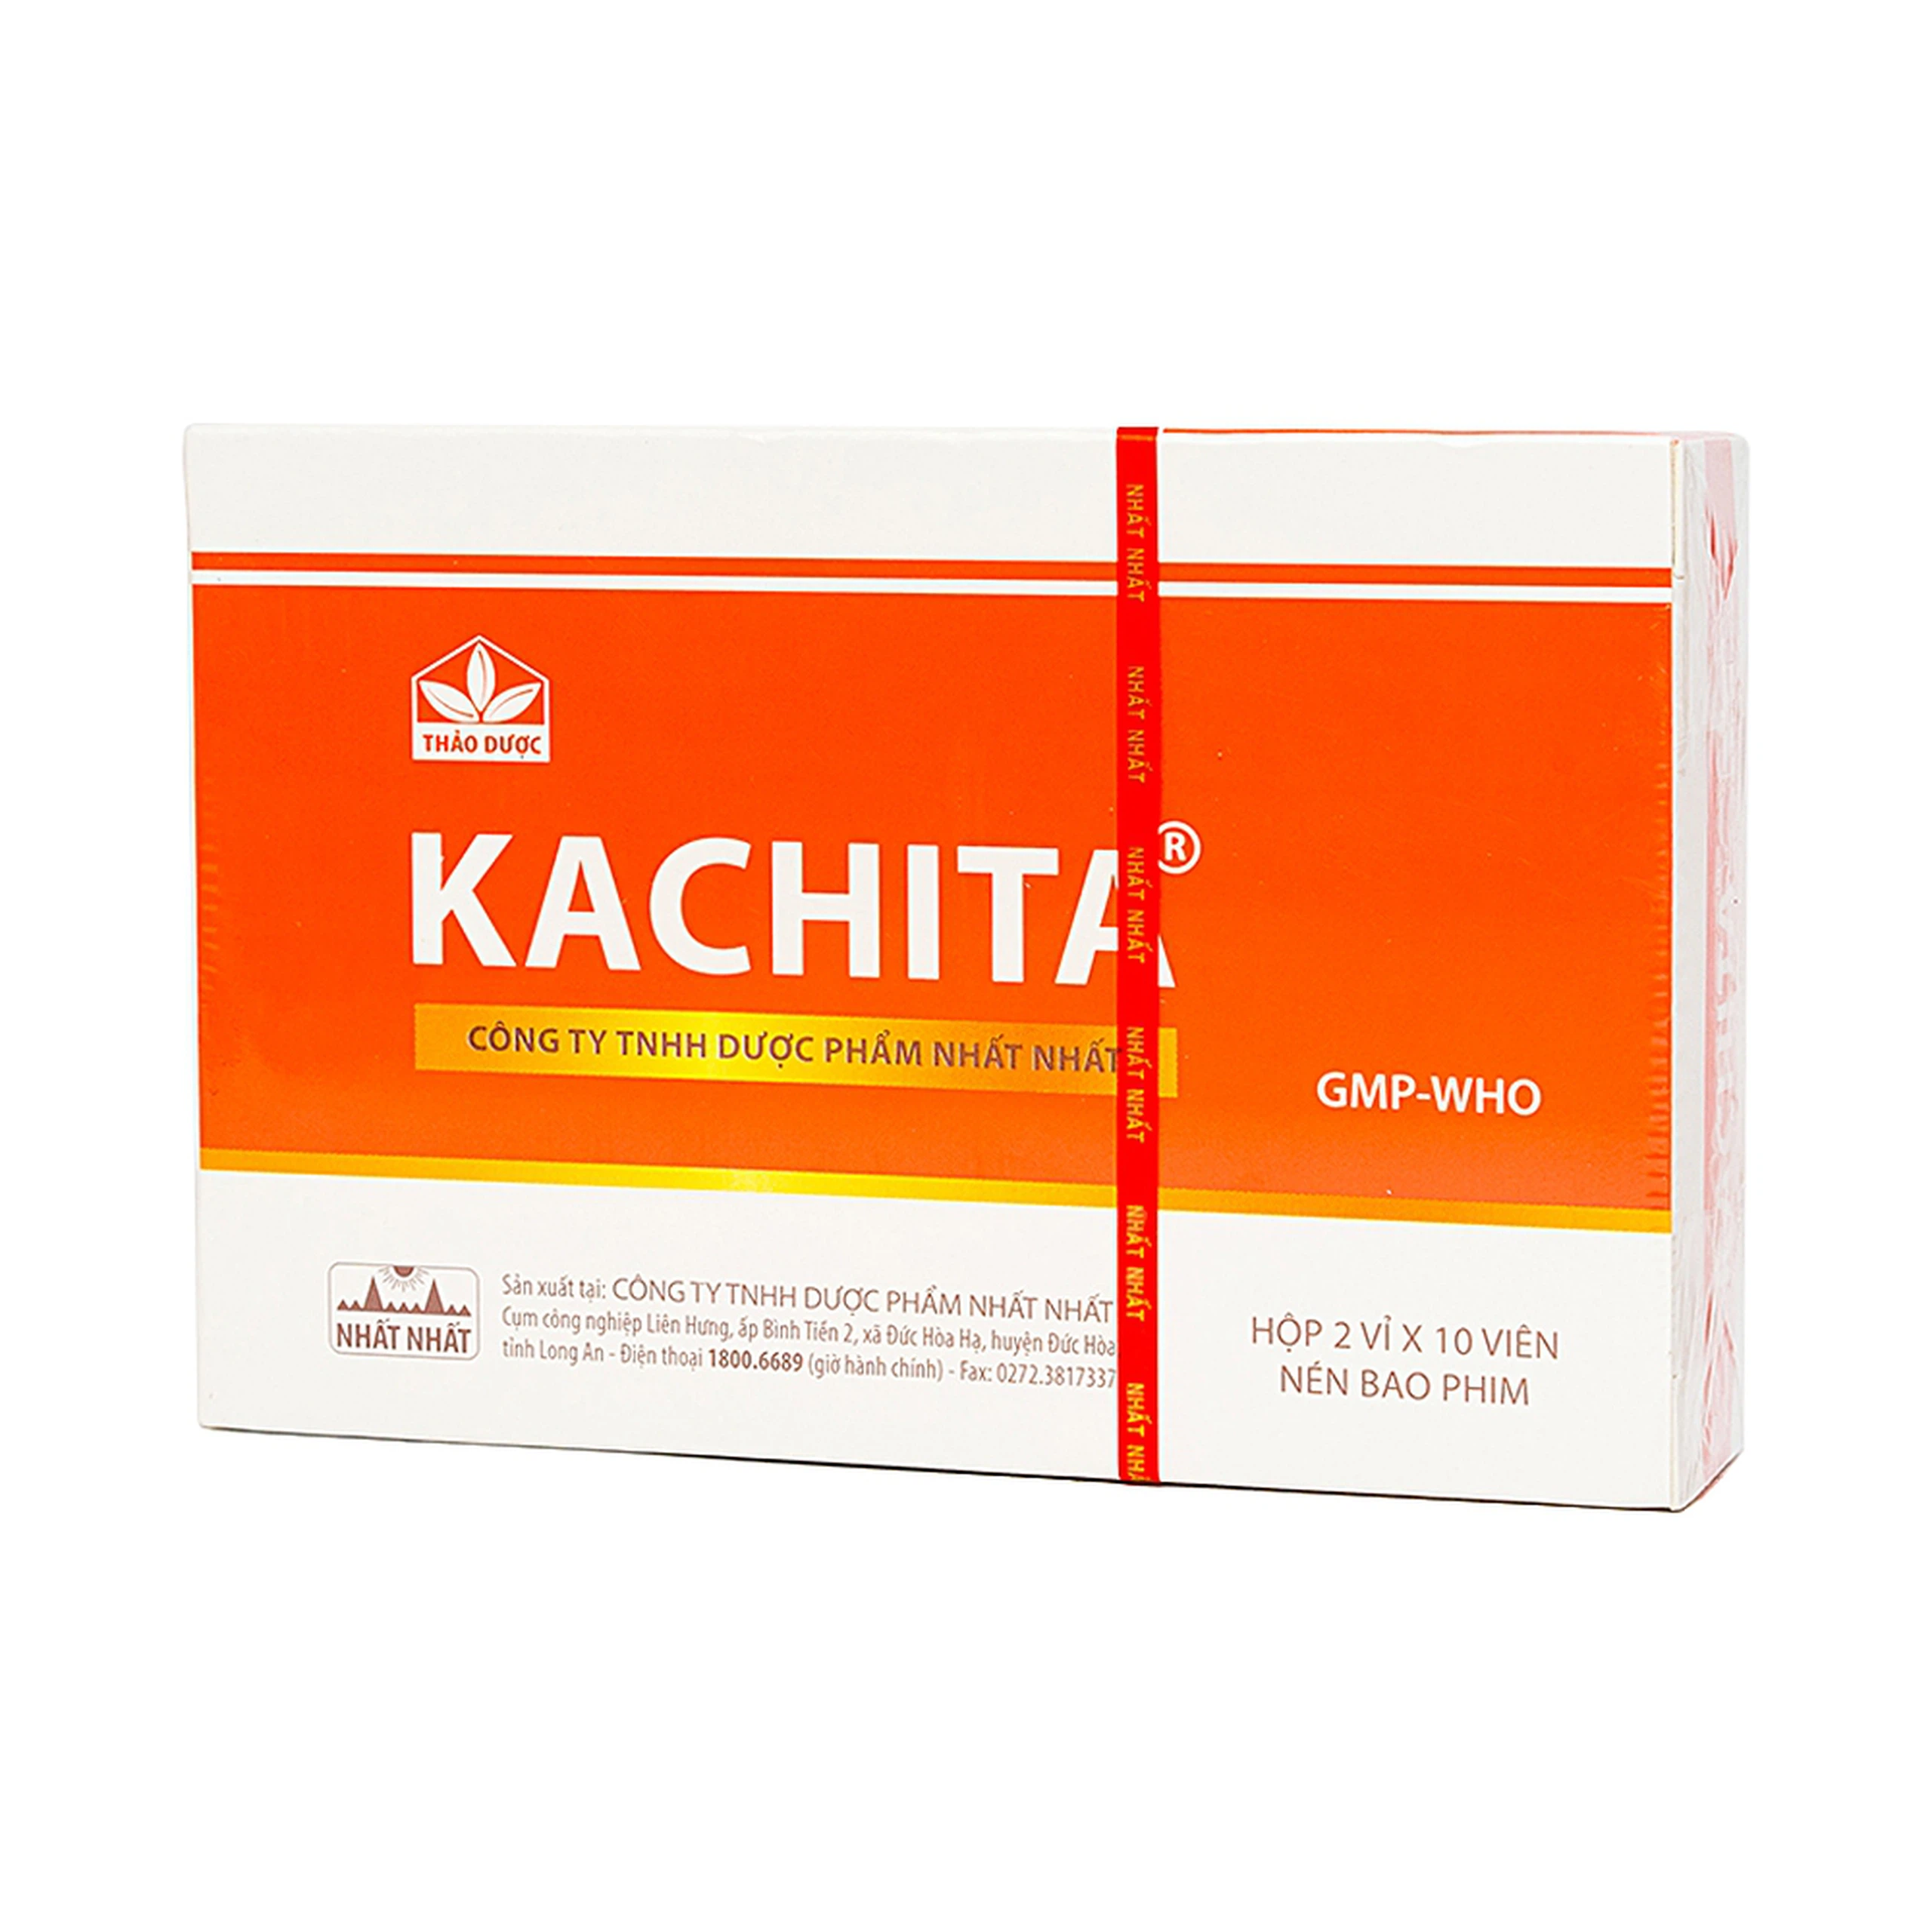 Thuốc Kachita Nhất Nhất thanh nhiệt, giải độc, chống viêm, tiêu sưng (2 vỉ x 10 viên)